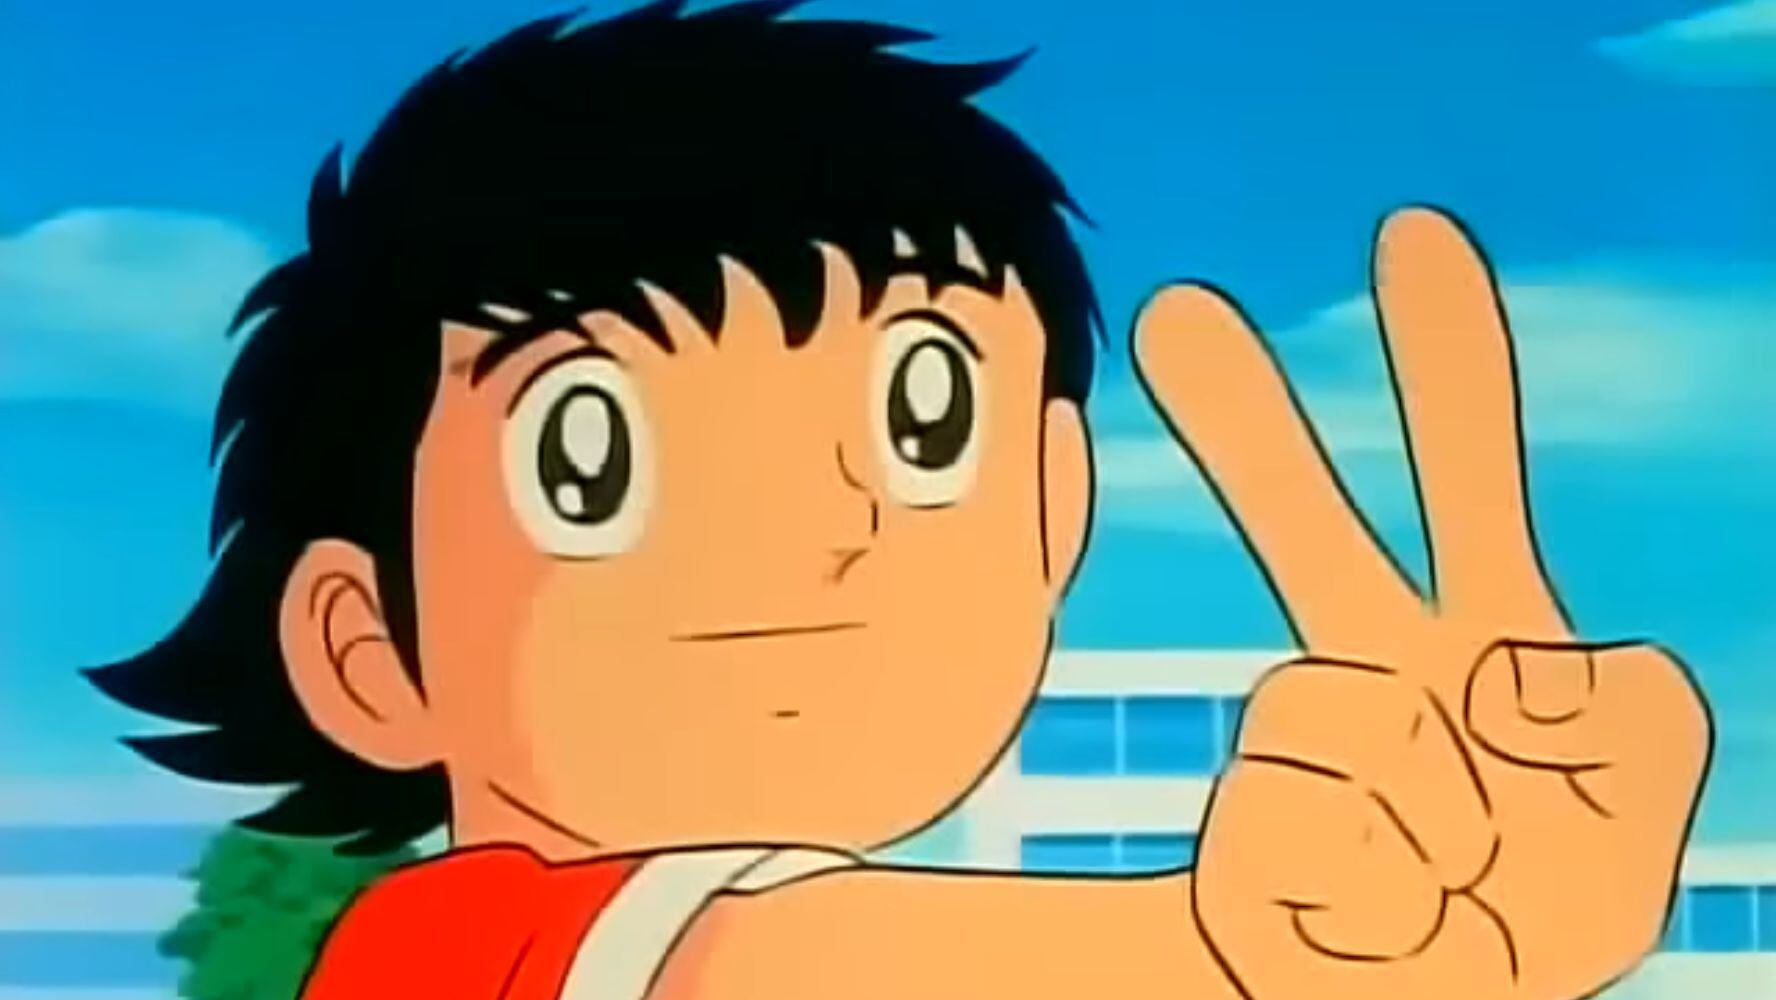 Supercampeones es un anime sobre futbol que se estrenó a finales de los ochenta. (Foto: Supercampeones)